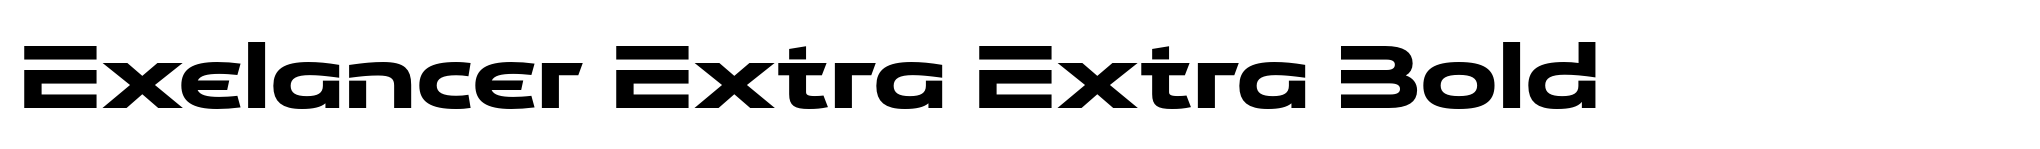 Exelancer Extra Extra Bold image